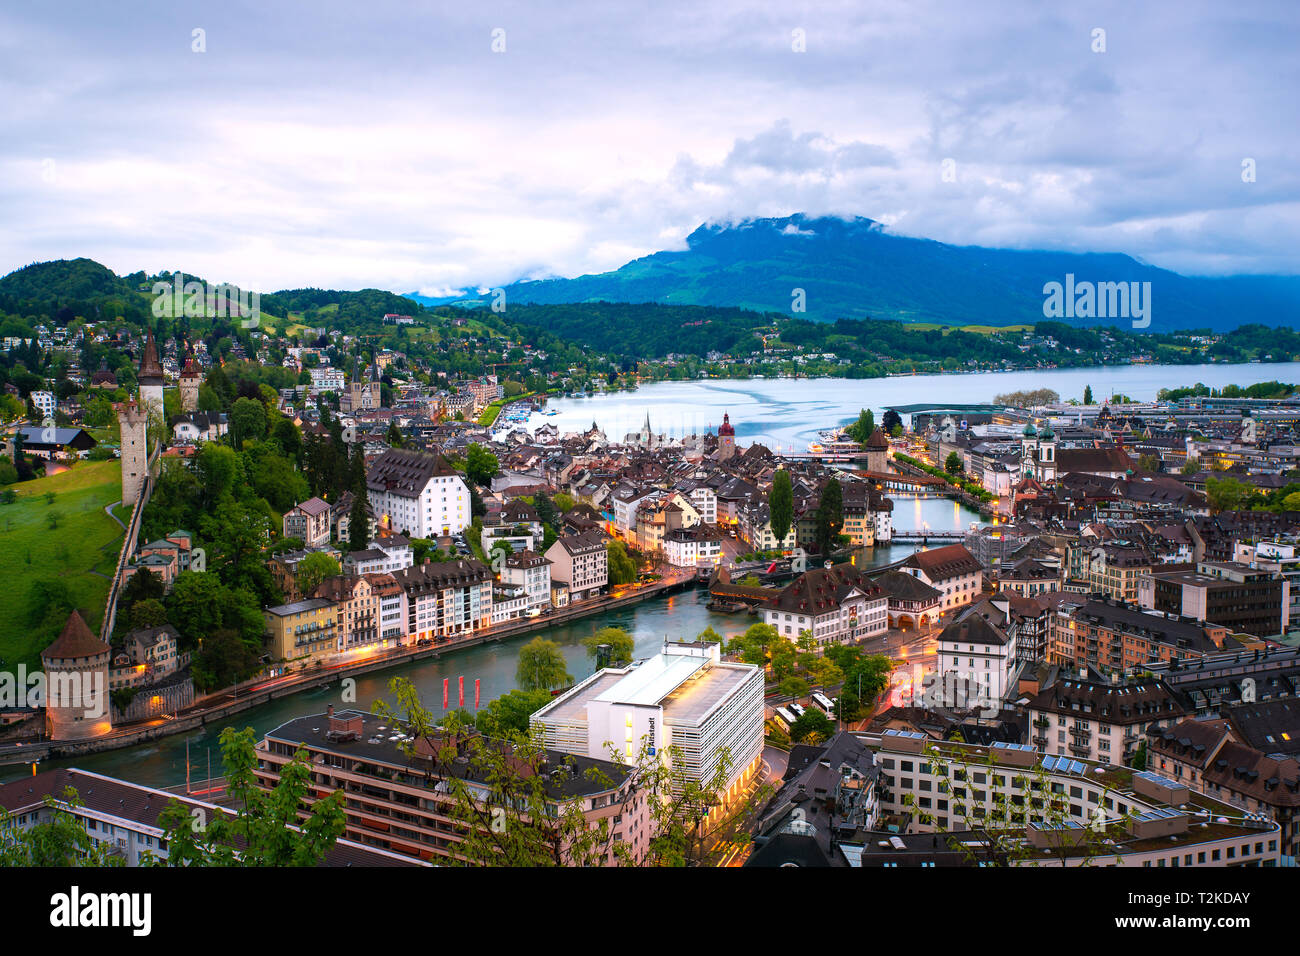 Vue aérienne de l'de tuiles rouges de la vieille ville de Lucerne avec pont de la chapelle en bois à Lucerne, Suisse. Banque D'Images